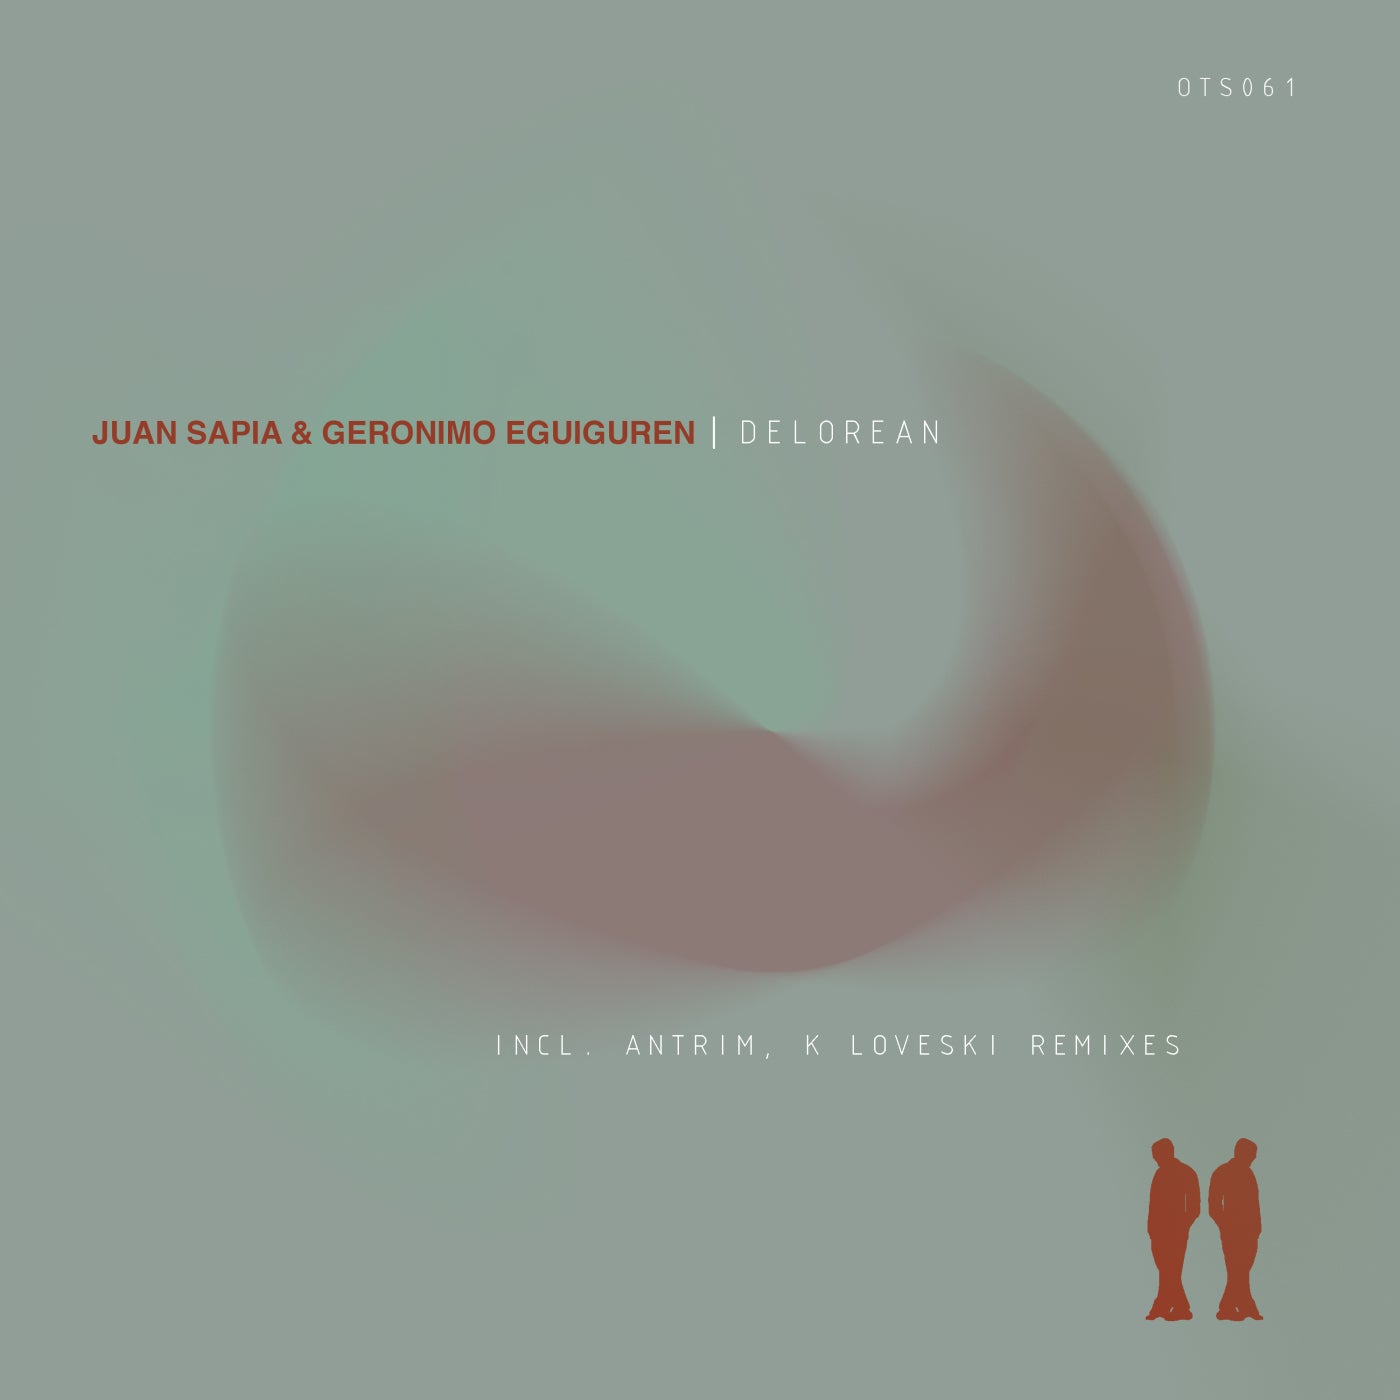 Juan Sapia, Geronimo Eguiguren - Delorean (K Loveski Remix)